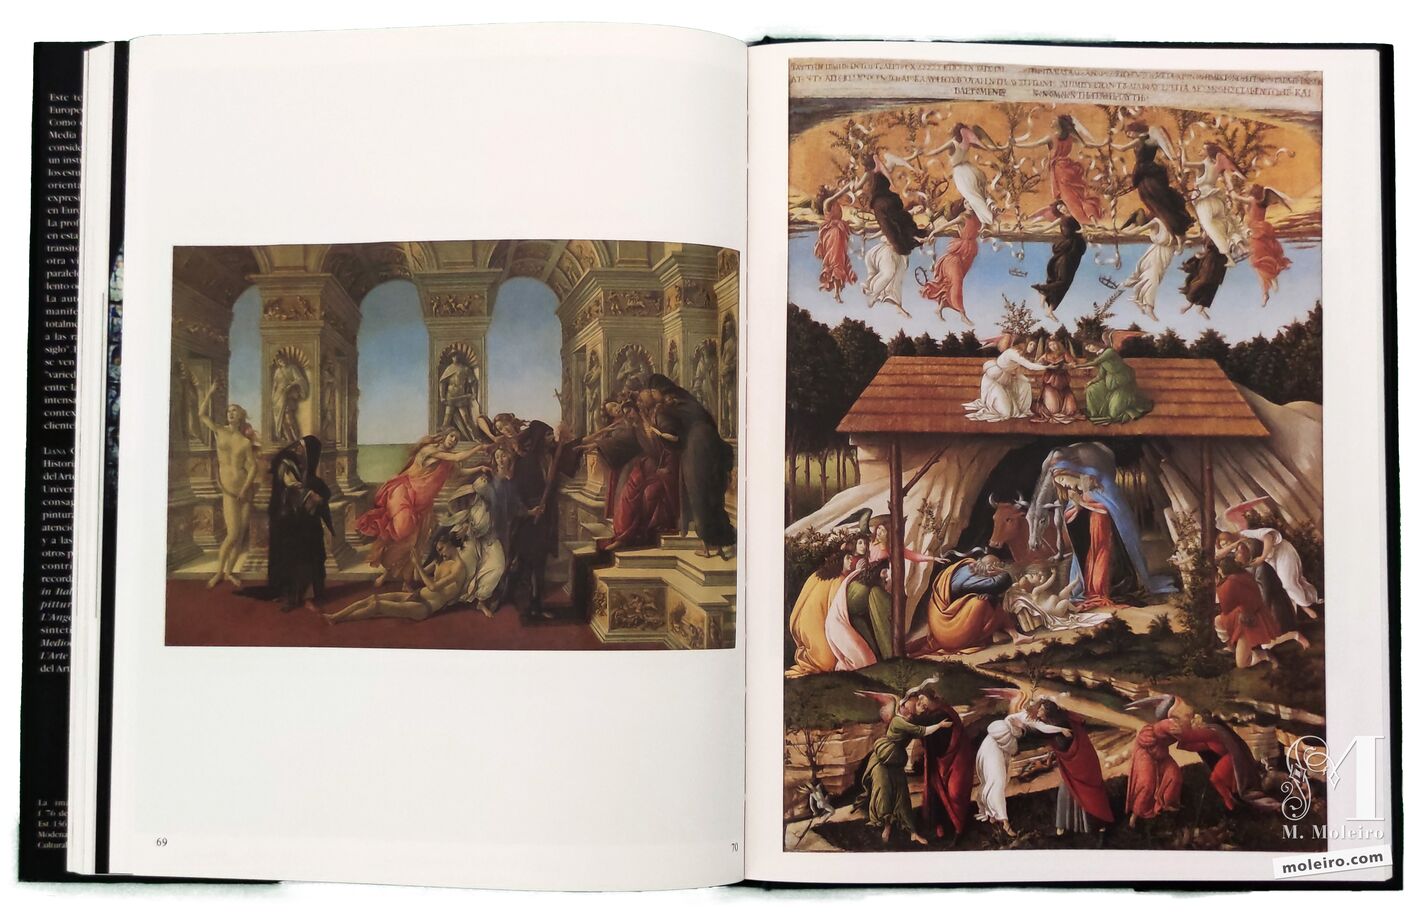 Sandro Botticelli, La calumnia, Florencia, Galleria degli Uffizi 